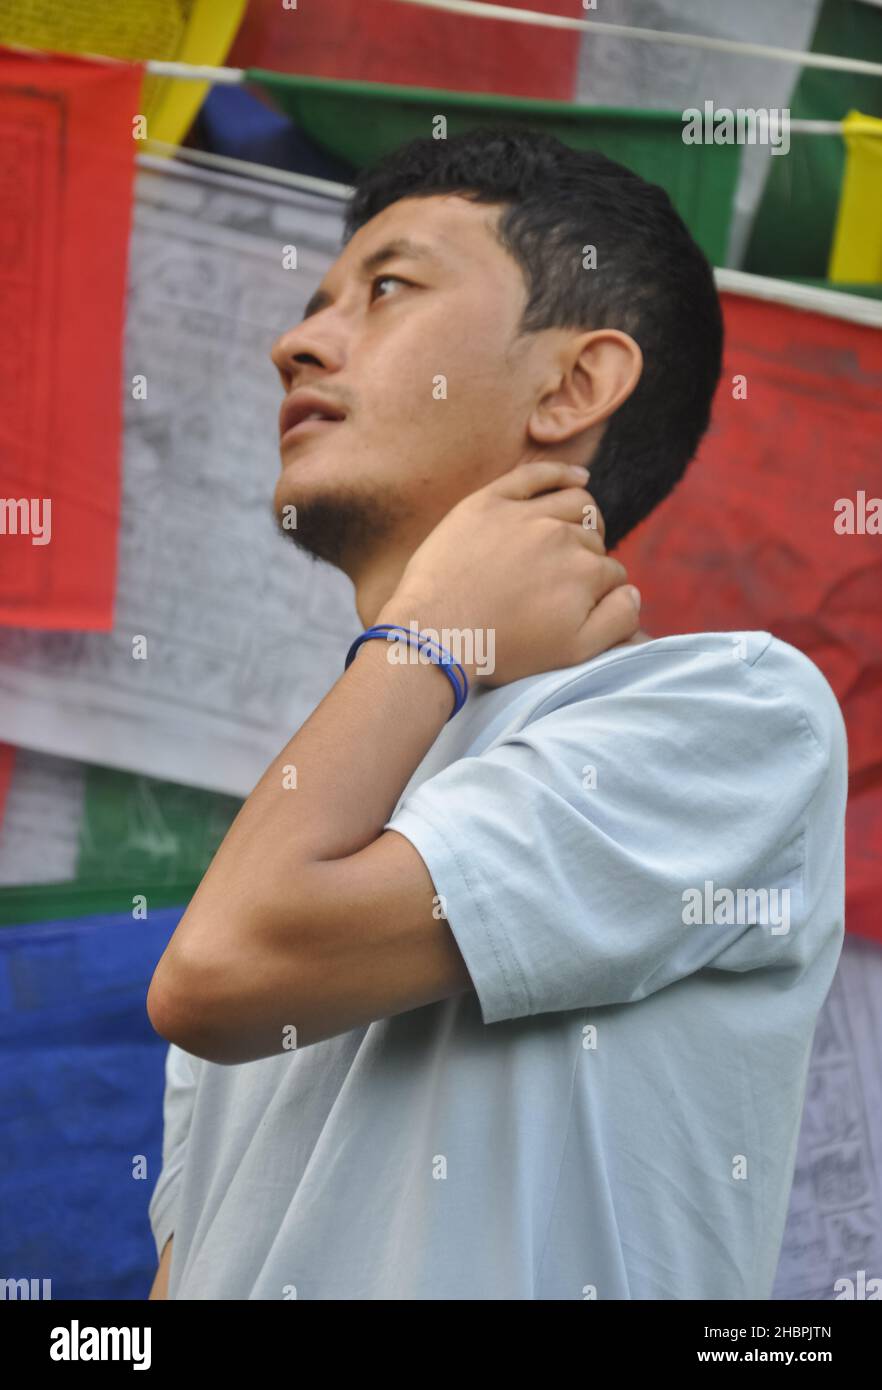 Nahaufnahme eines asiatischen Mannes, der mit der Hand hinter dem Hals zur Seite blickt und gegen buddhistische Gebetsfahnen steht Stockfoto